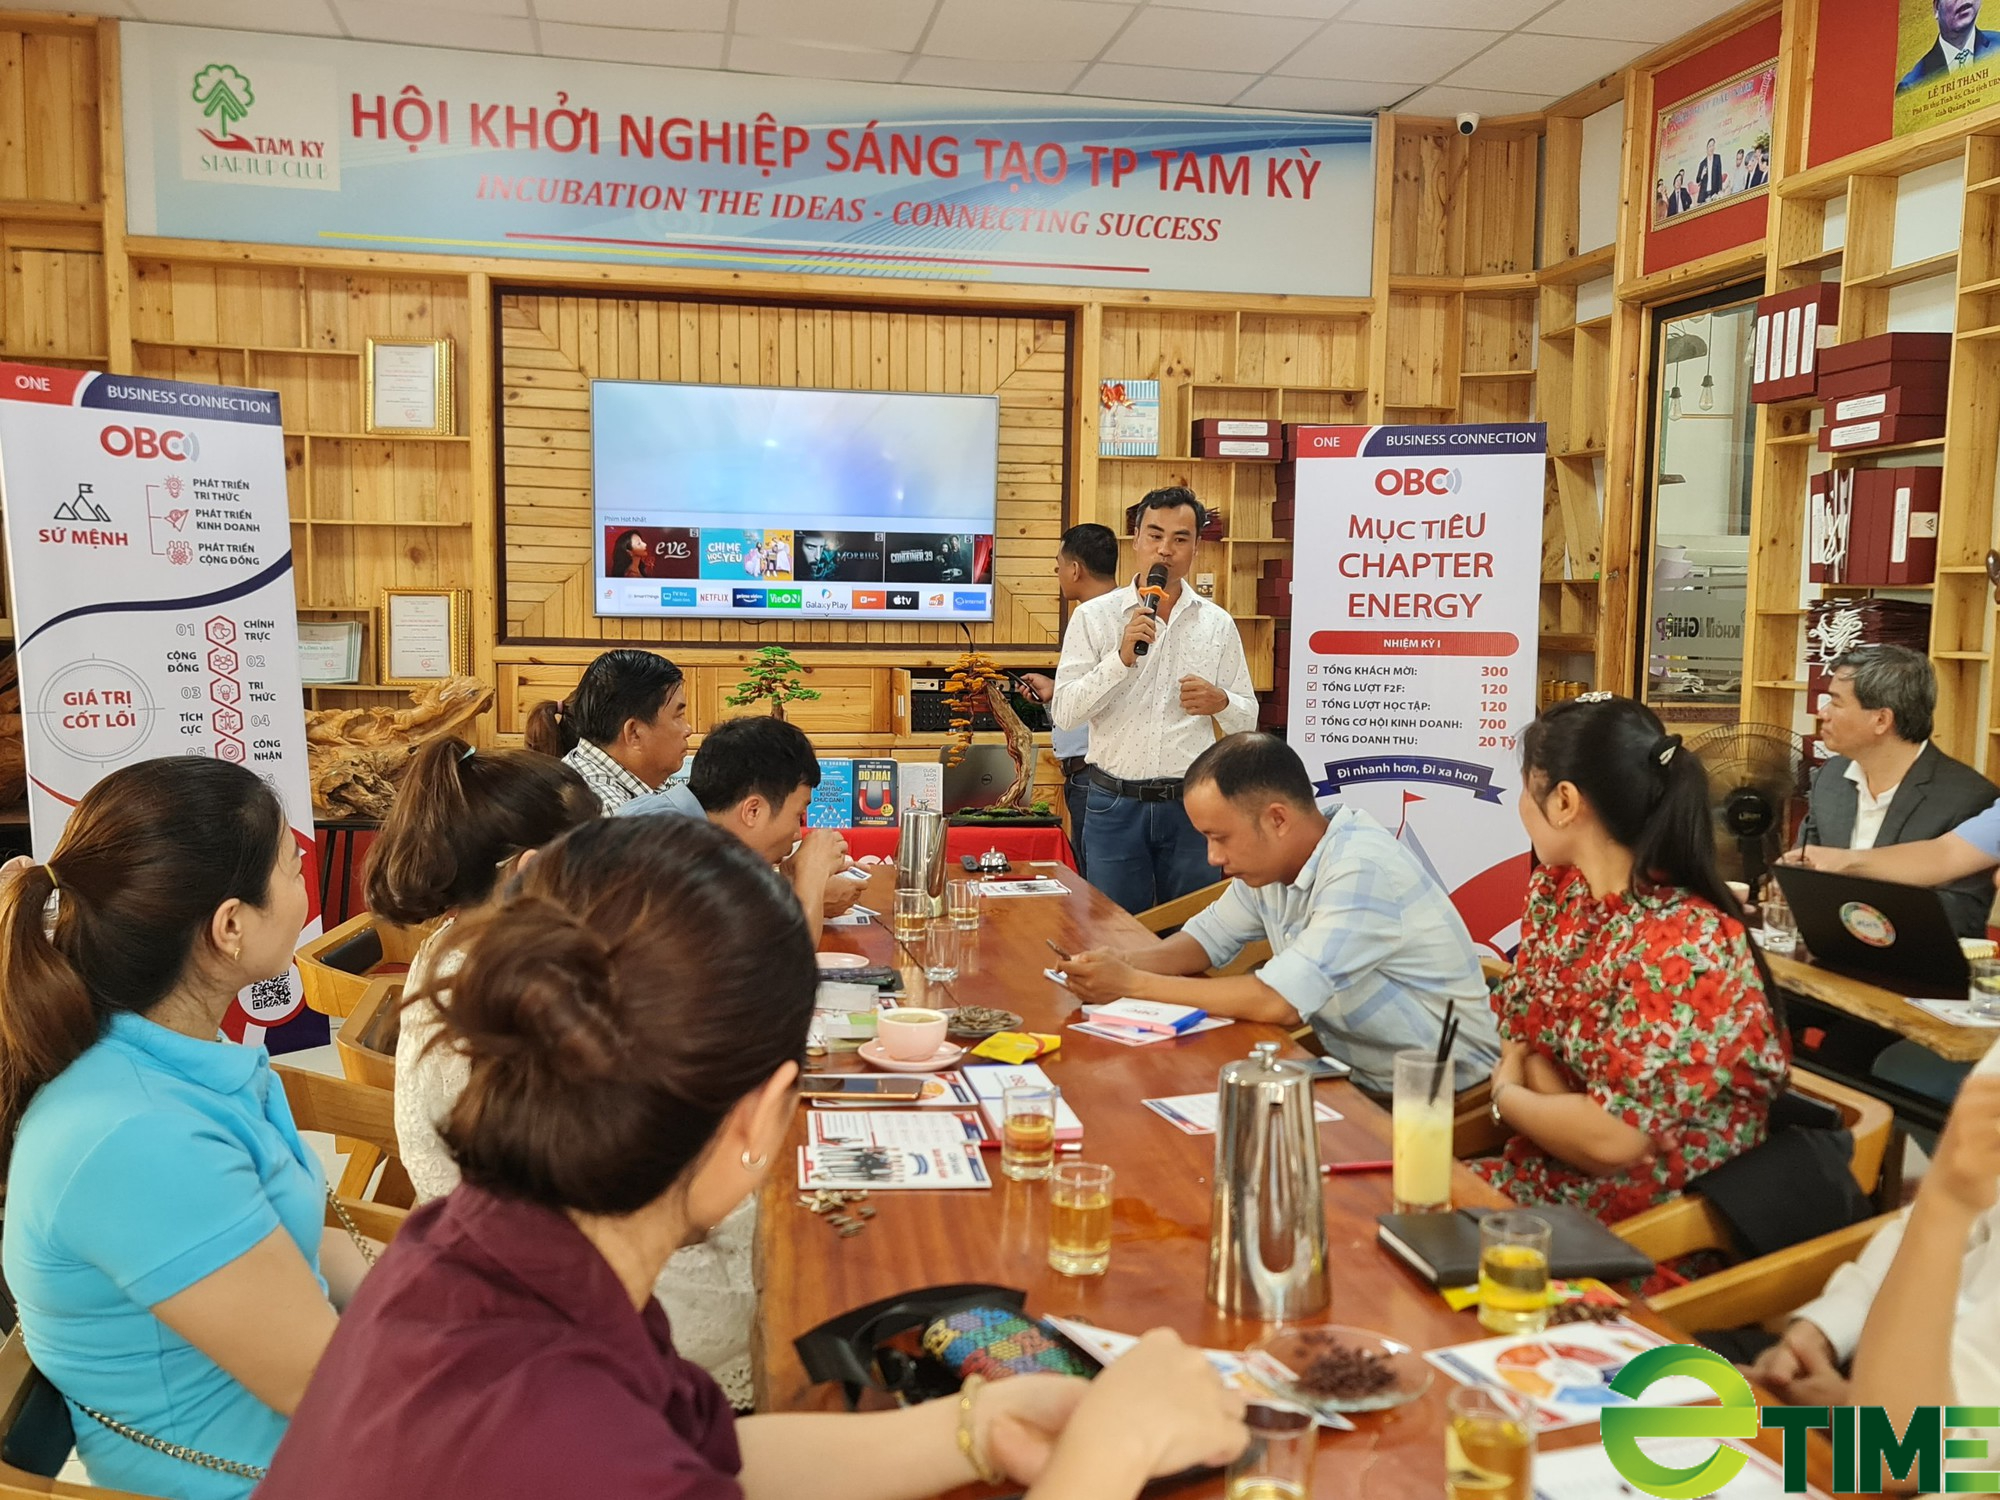 Quảng Nam: OBC Việt Nam mong muốn chắp cánh cho doanh nghiệp nhỏ và siêu nhỏ ở Tam Kỳ bay xa - Ảnh 1.